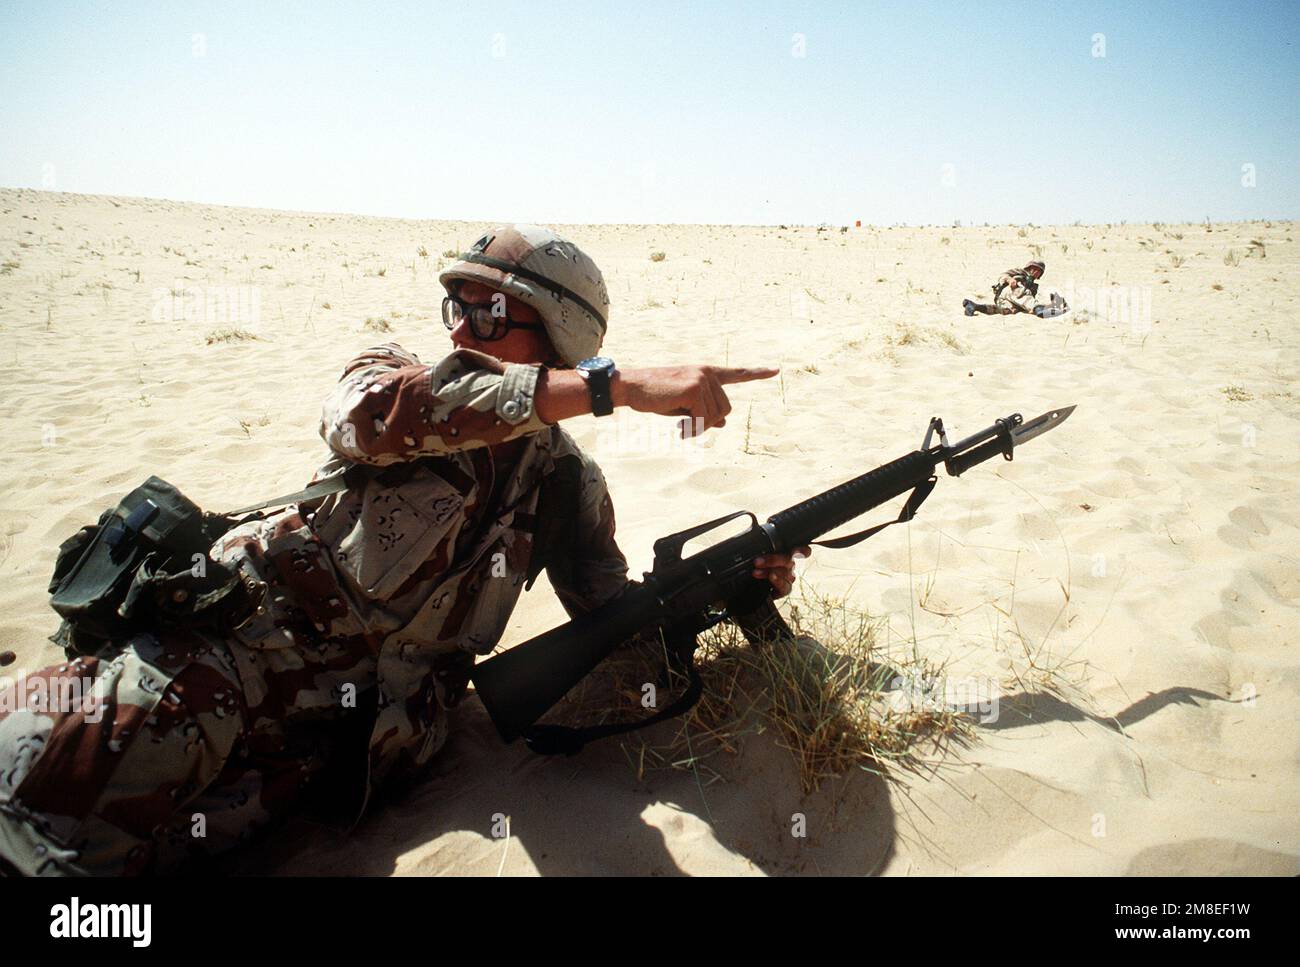 Un chef d'équipe de 1st BN., 505th Parachute Infantry Regt., 82nd Airborne Dive., dirige ses soldats par un exercice de réaction pendant l'opération Desert Shield. Le sergent est armé d'un fusil M-16A2 à baïonnette fixe. Objet opération/série : BOUCLIER DU DÉSERT pays : Arabie saoudite (SAU) Banque D'Images